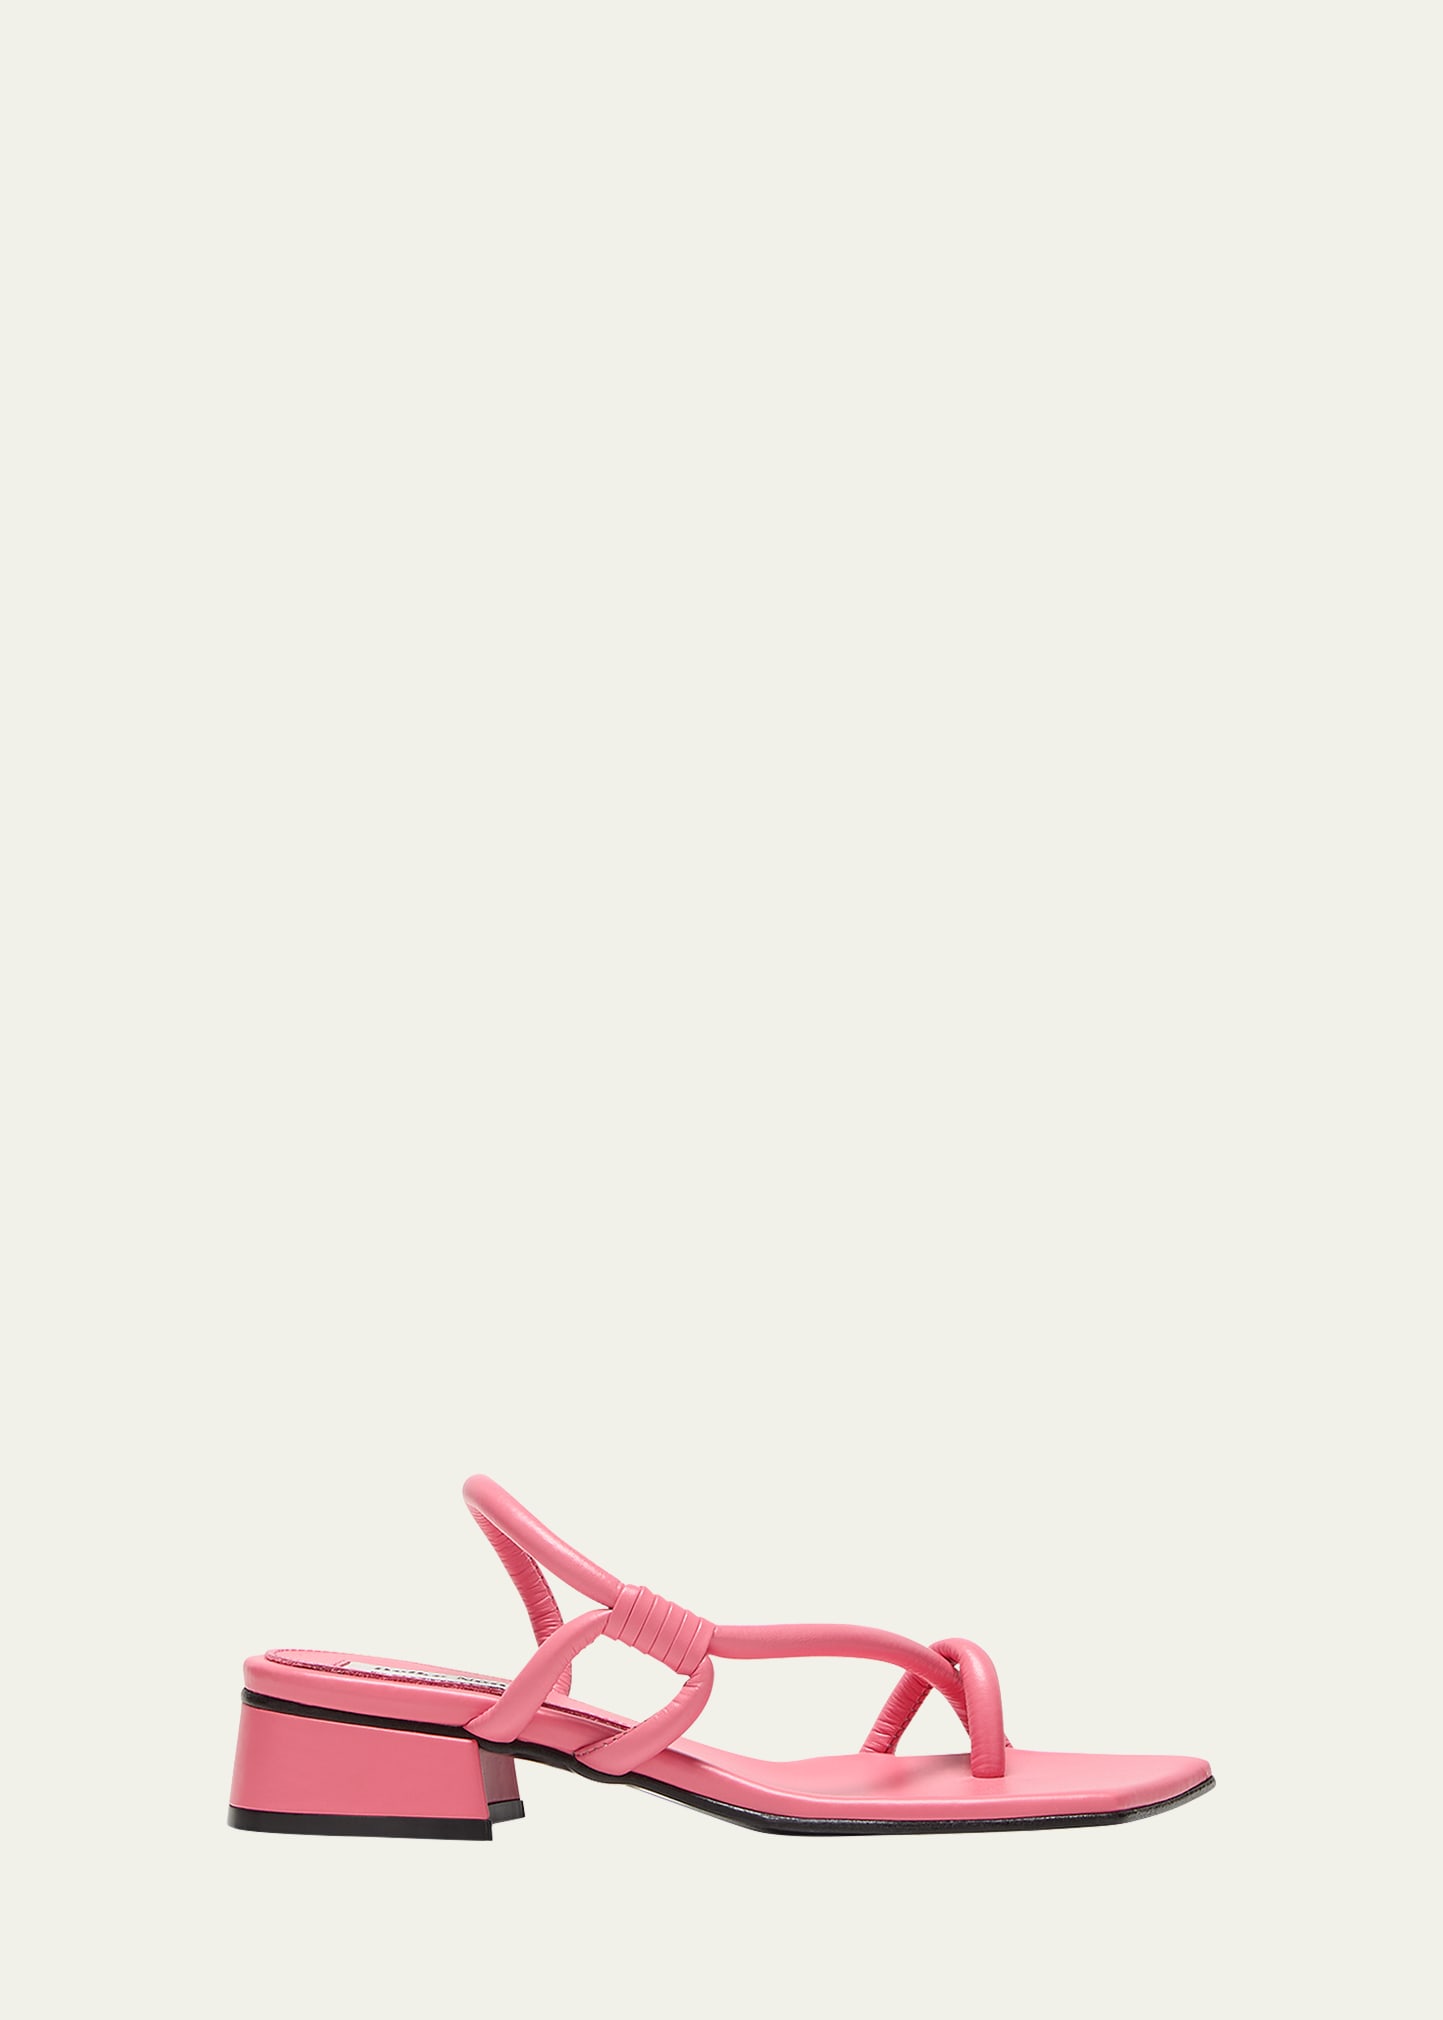 Reike Nen Noodle Tubular Leather Slingback Sandals In Pink